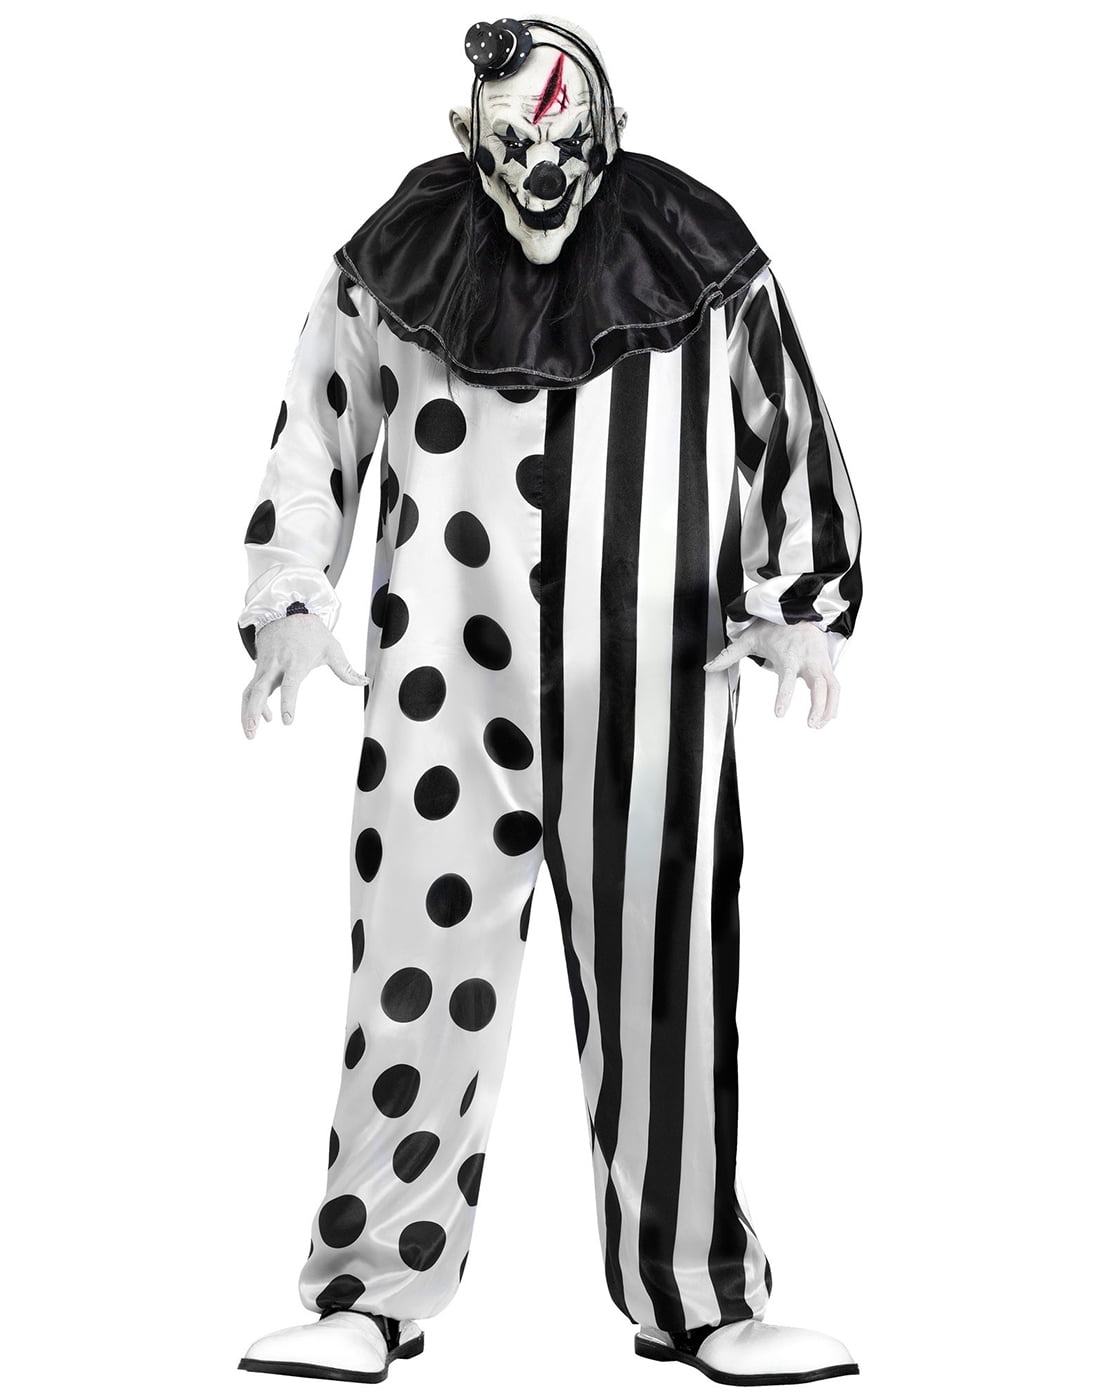 Killer Clown Adult Costume by Fun World, Size L - Walmart.com